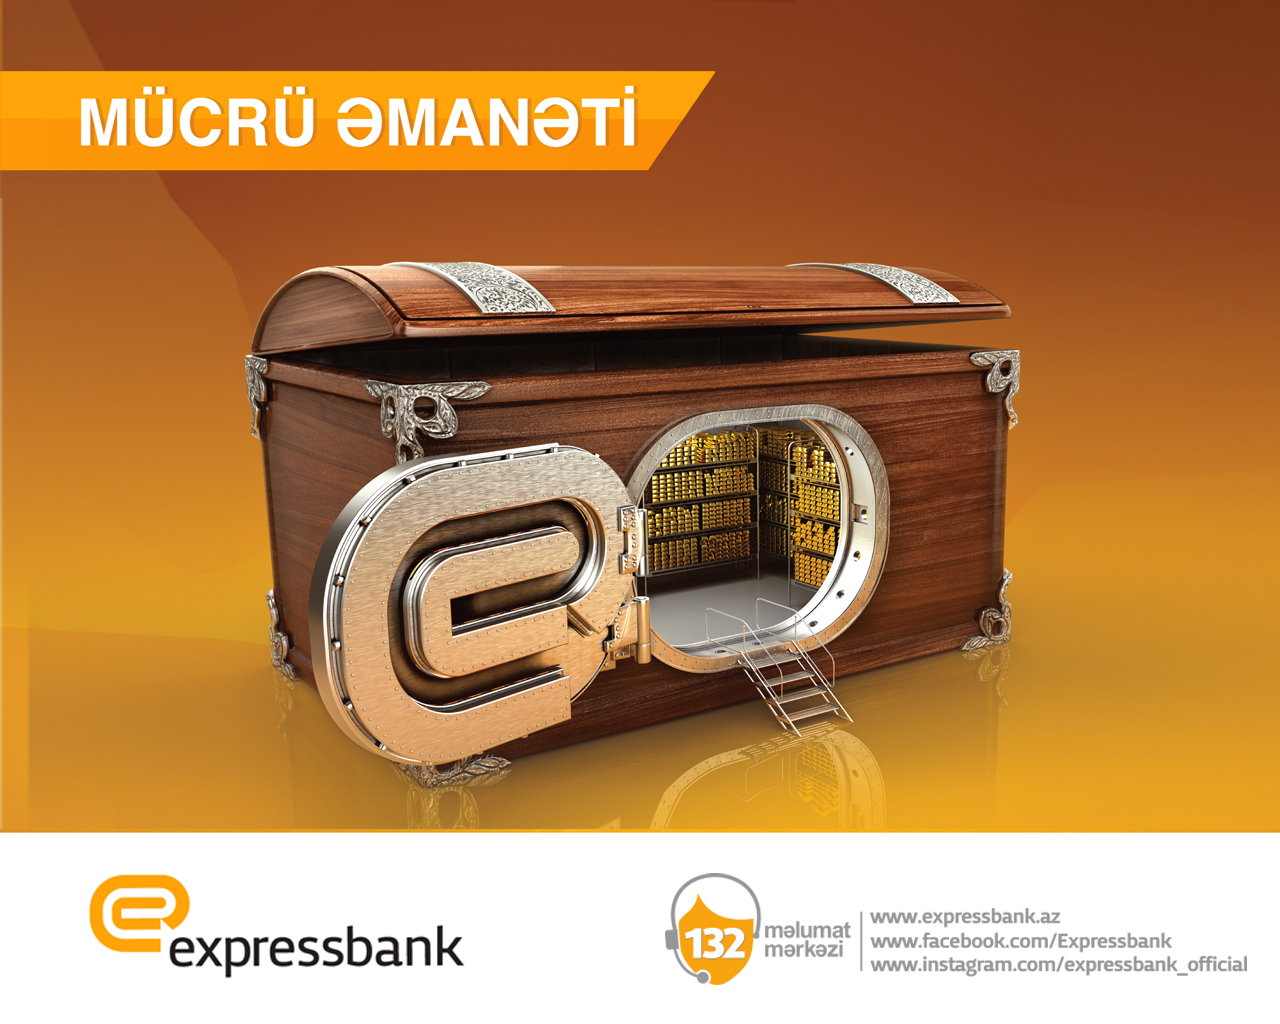 Копить деньги с Expressbank выгодно и удобно